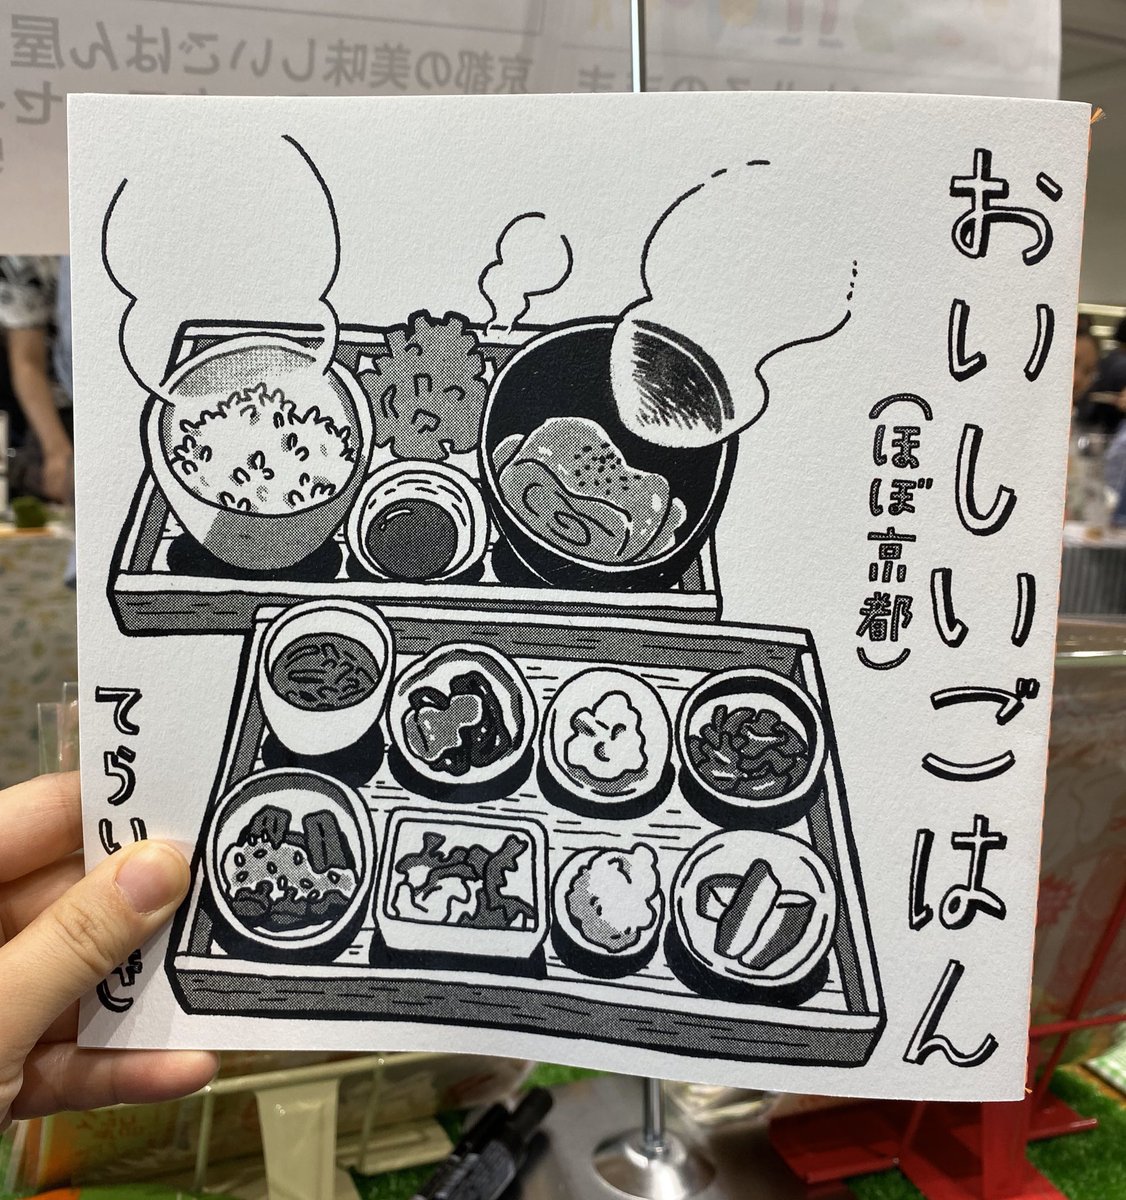 京都のオススメご飯屋さんを紹介するコミックエッセイ、おすすめのものを紹介しまくるイラストエッセイも明日持っていきます♡

#COMICCITY大阪119 